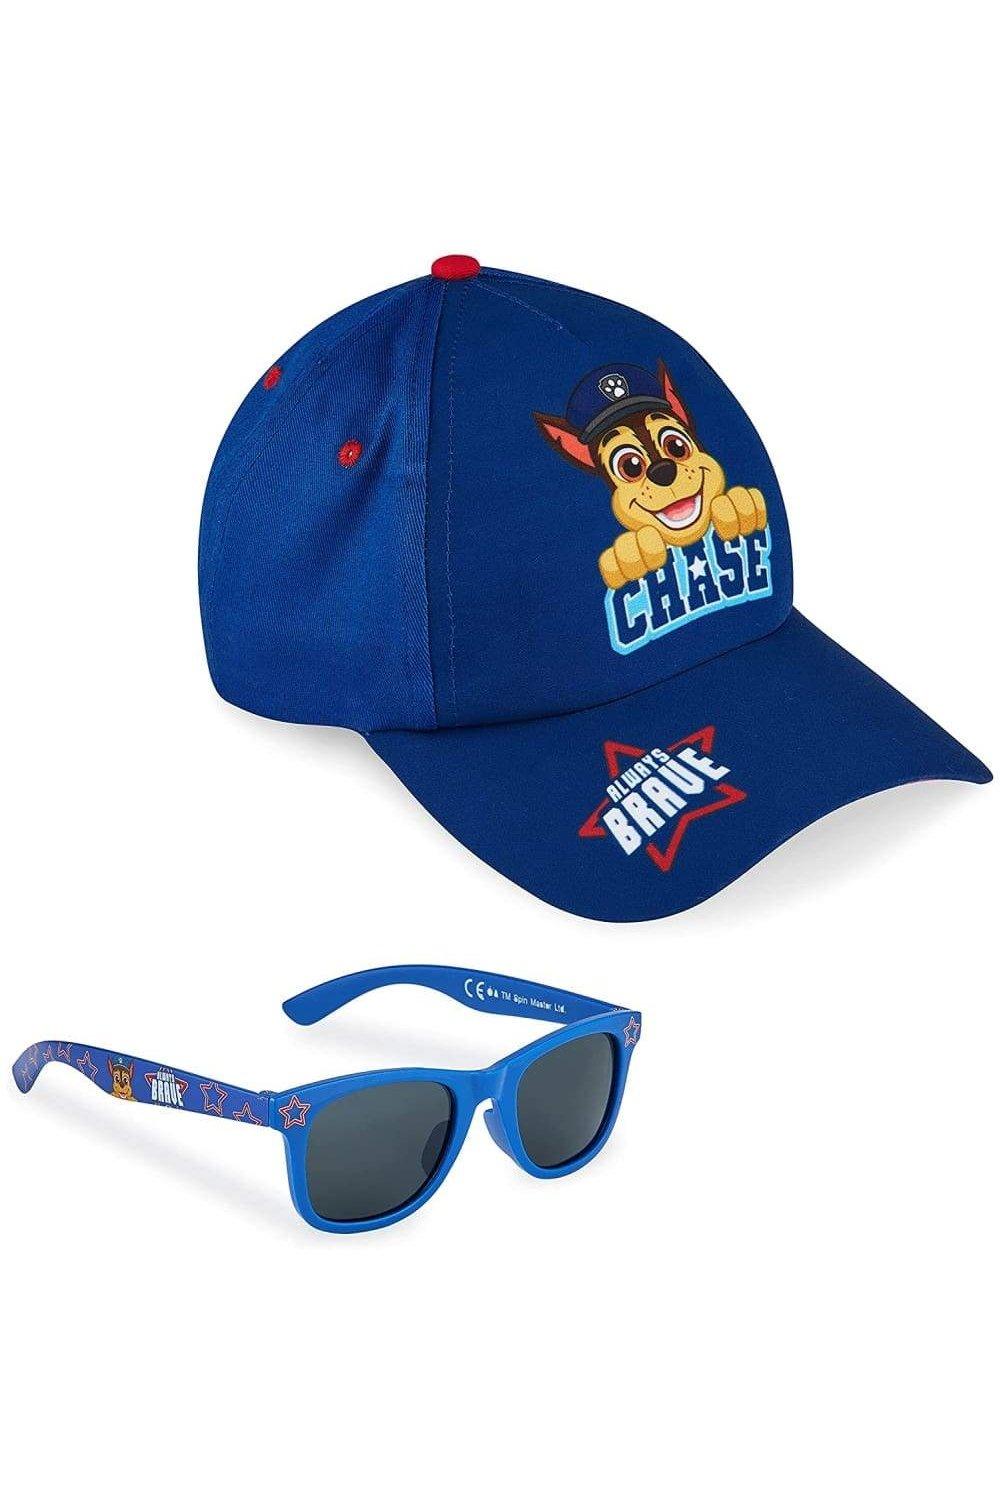 Бейсболка и солнцезащитные очки Chase Paw Patrol, синий комплект пуховых одеял paw patrol splodge junior panel